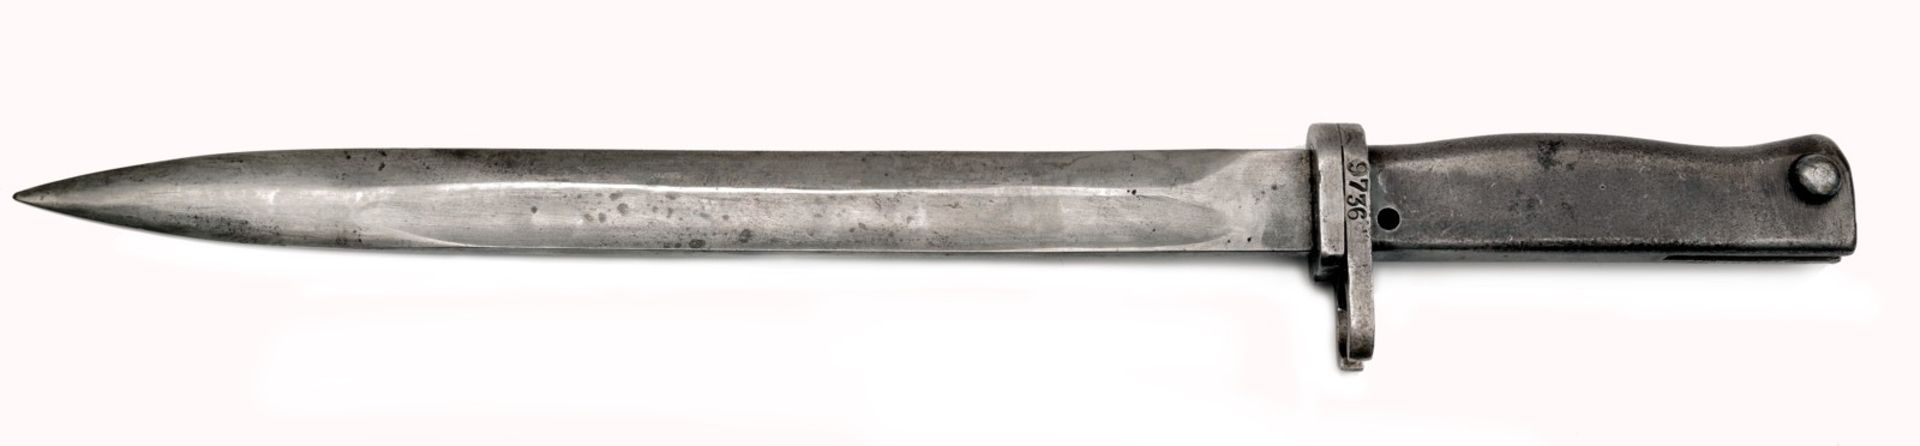 All-Steel 1916 Ersatz Bayonet